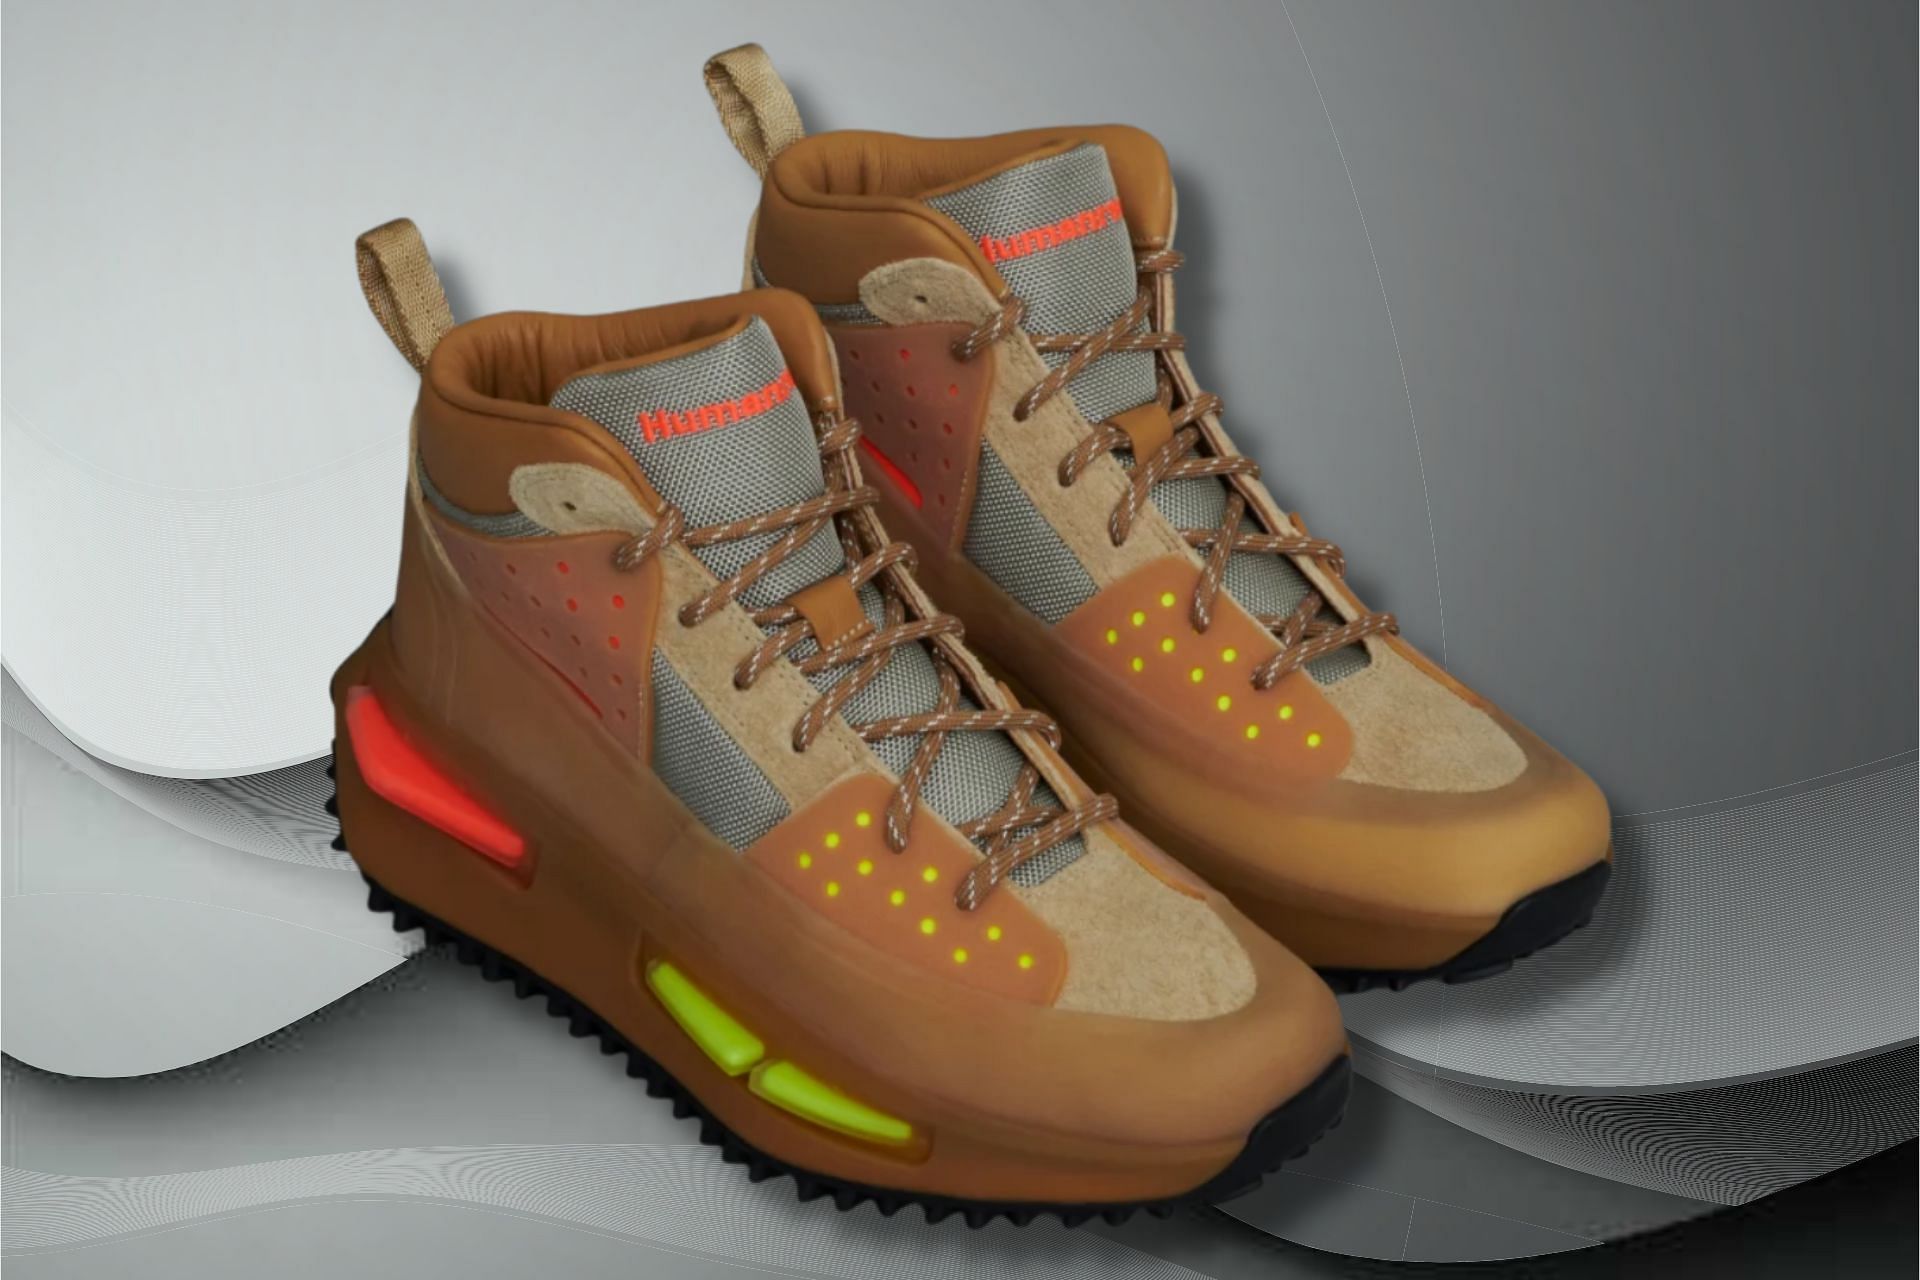 Pharrell Williams x Adidas Hu NMD S1 RYAT Tan sneakers (Image via Adidas)